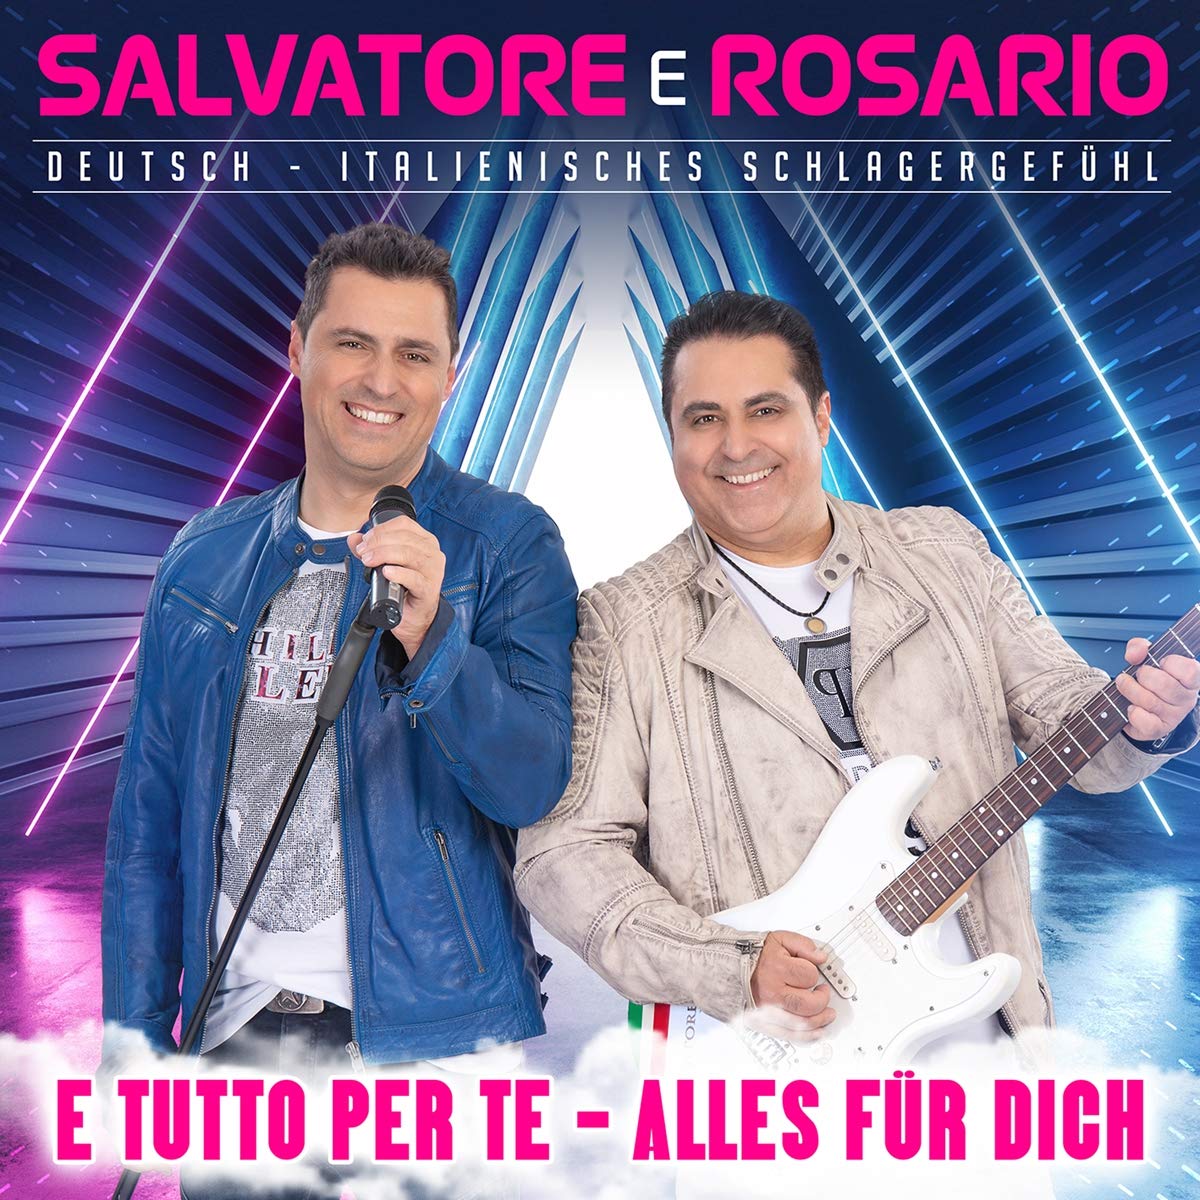 Salvatore e Rosario - E tutto per te - Alles für dich (2020) 